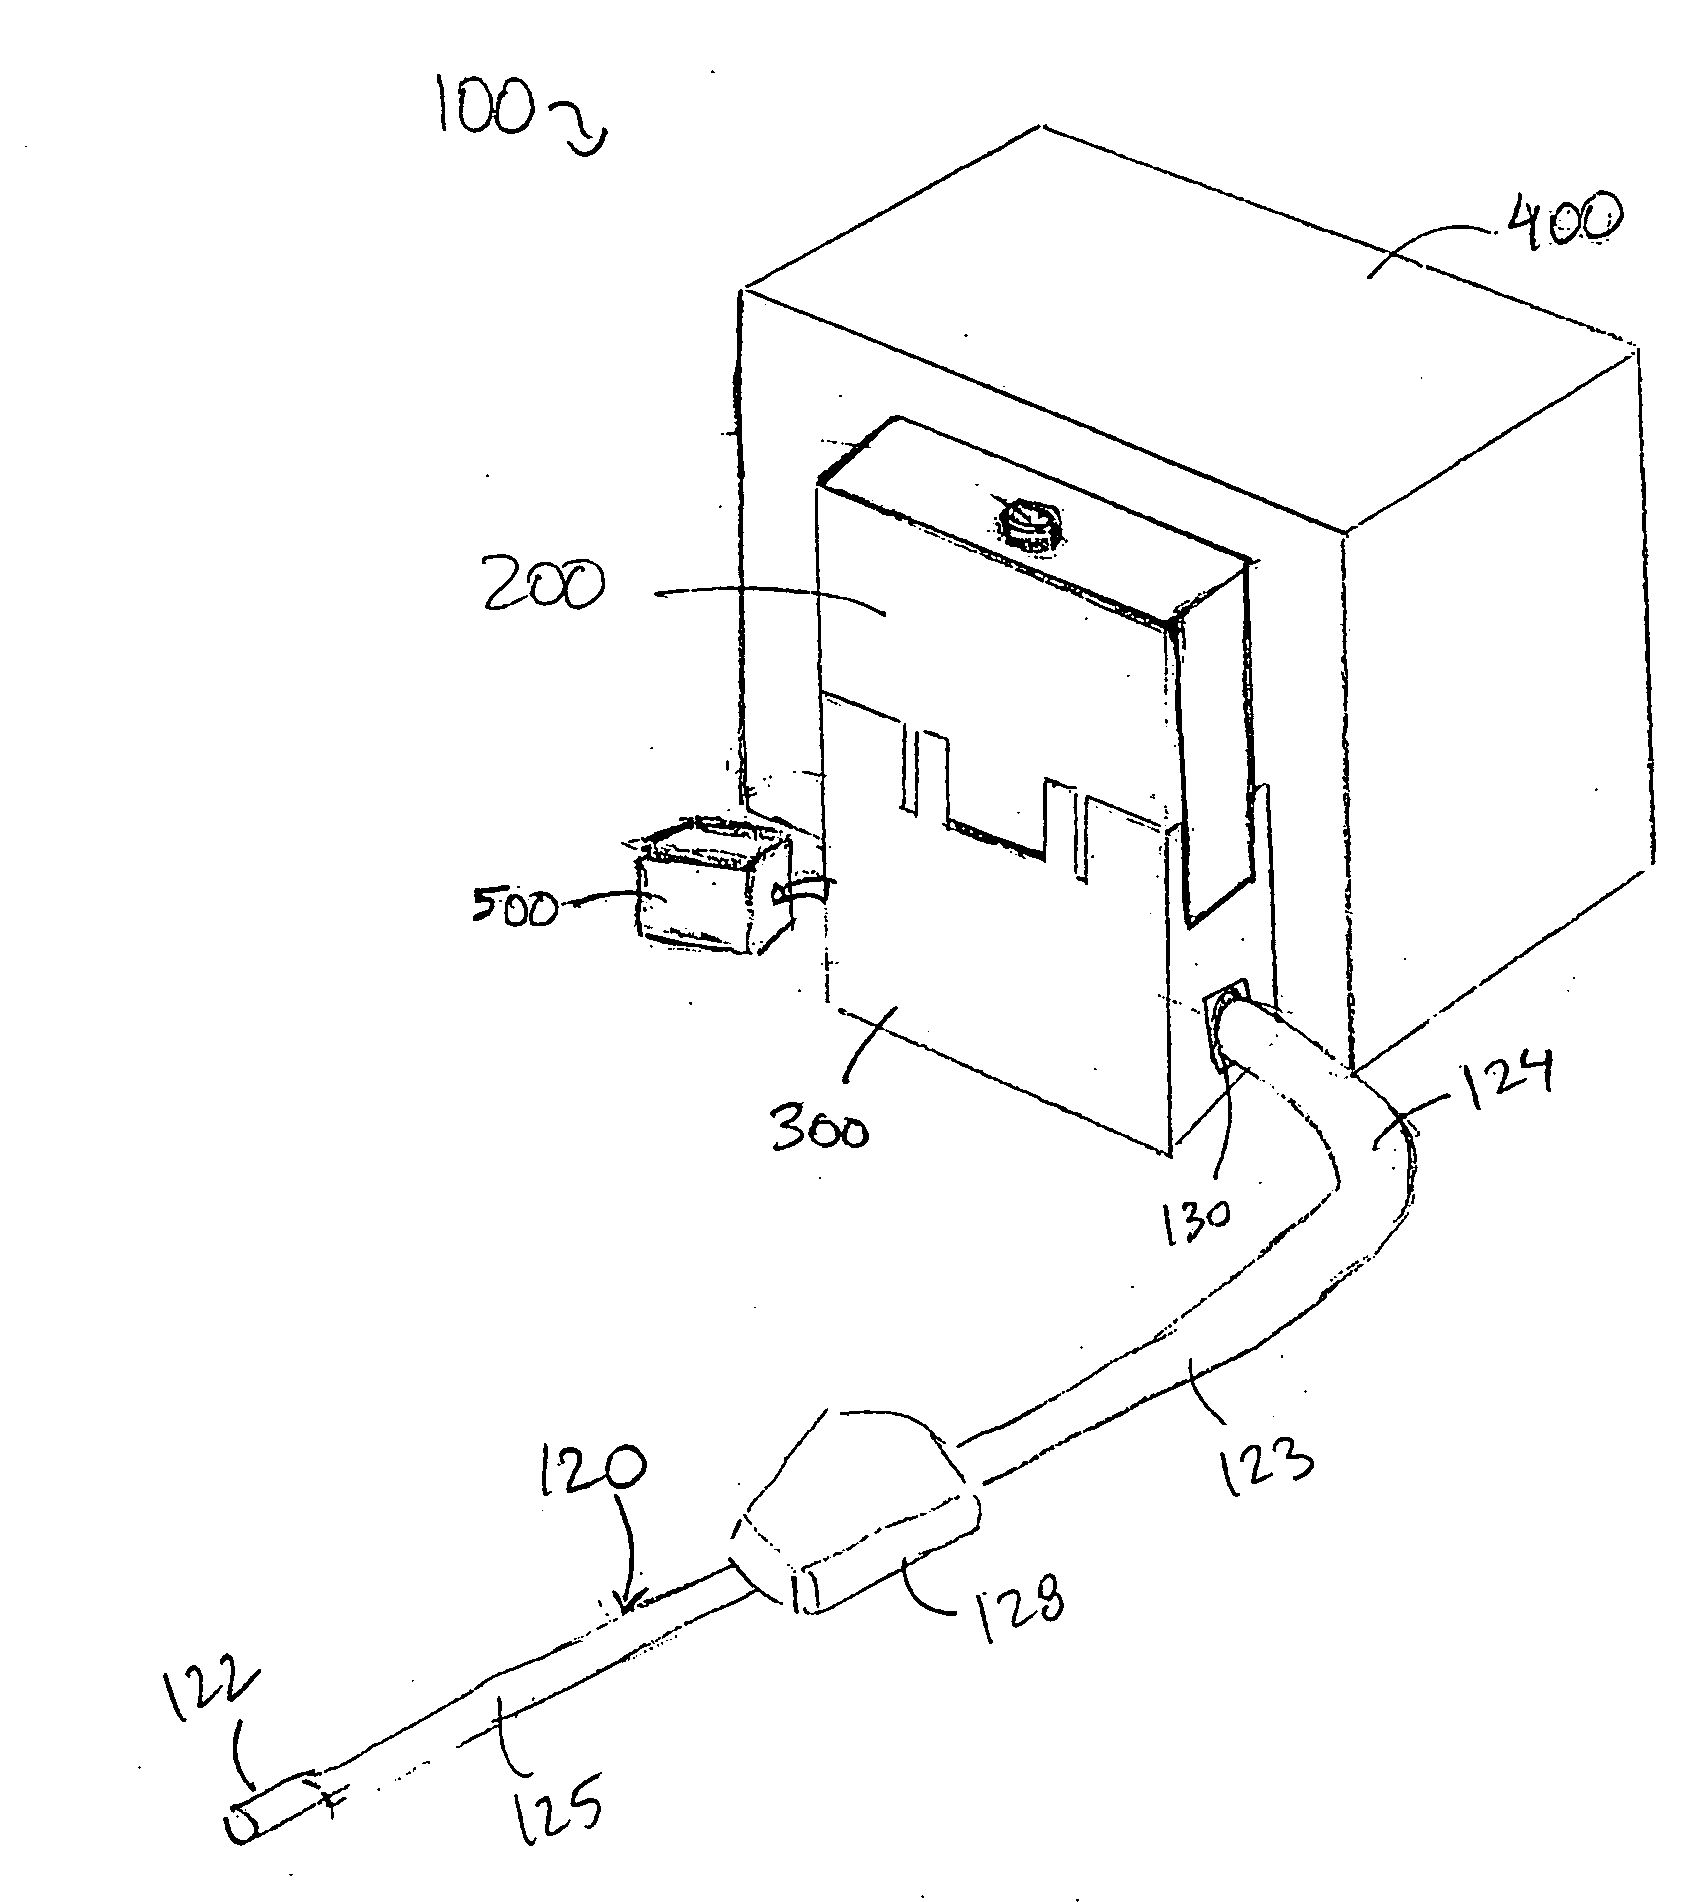 Single use fluid reservoir for an endoscope